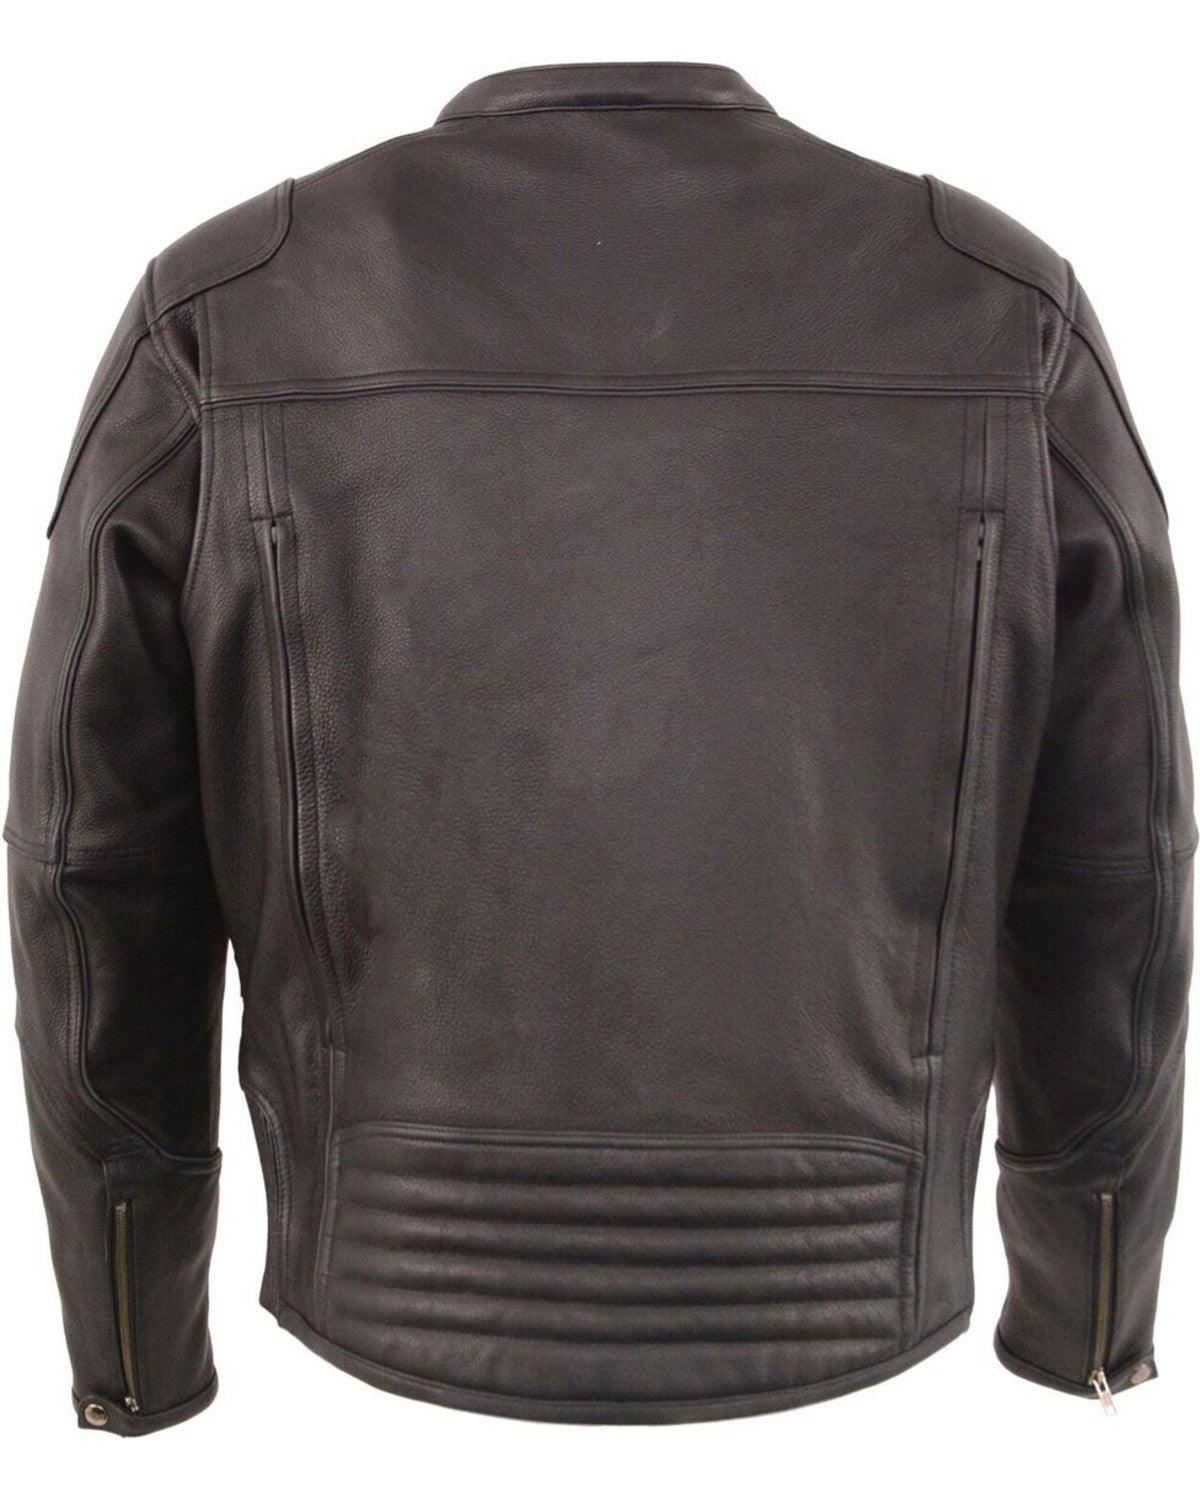 Black Cool Tec Leather Biker Jacket For Men